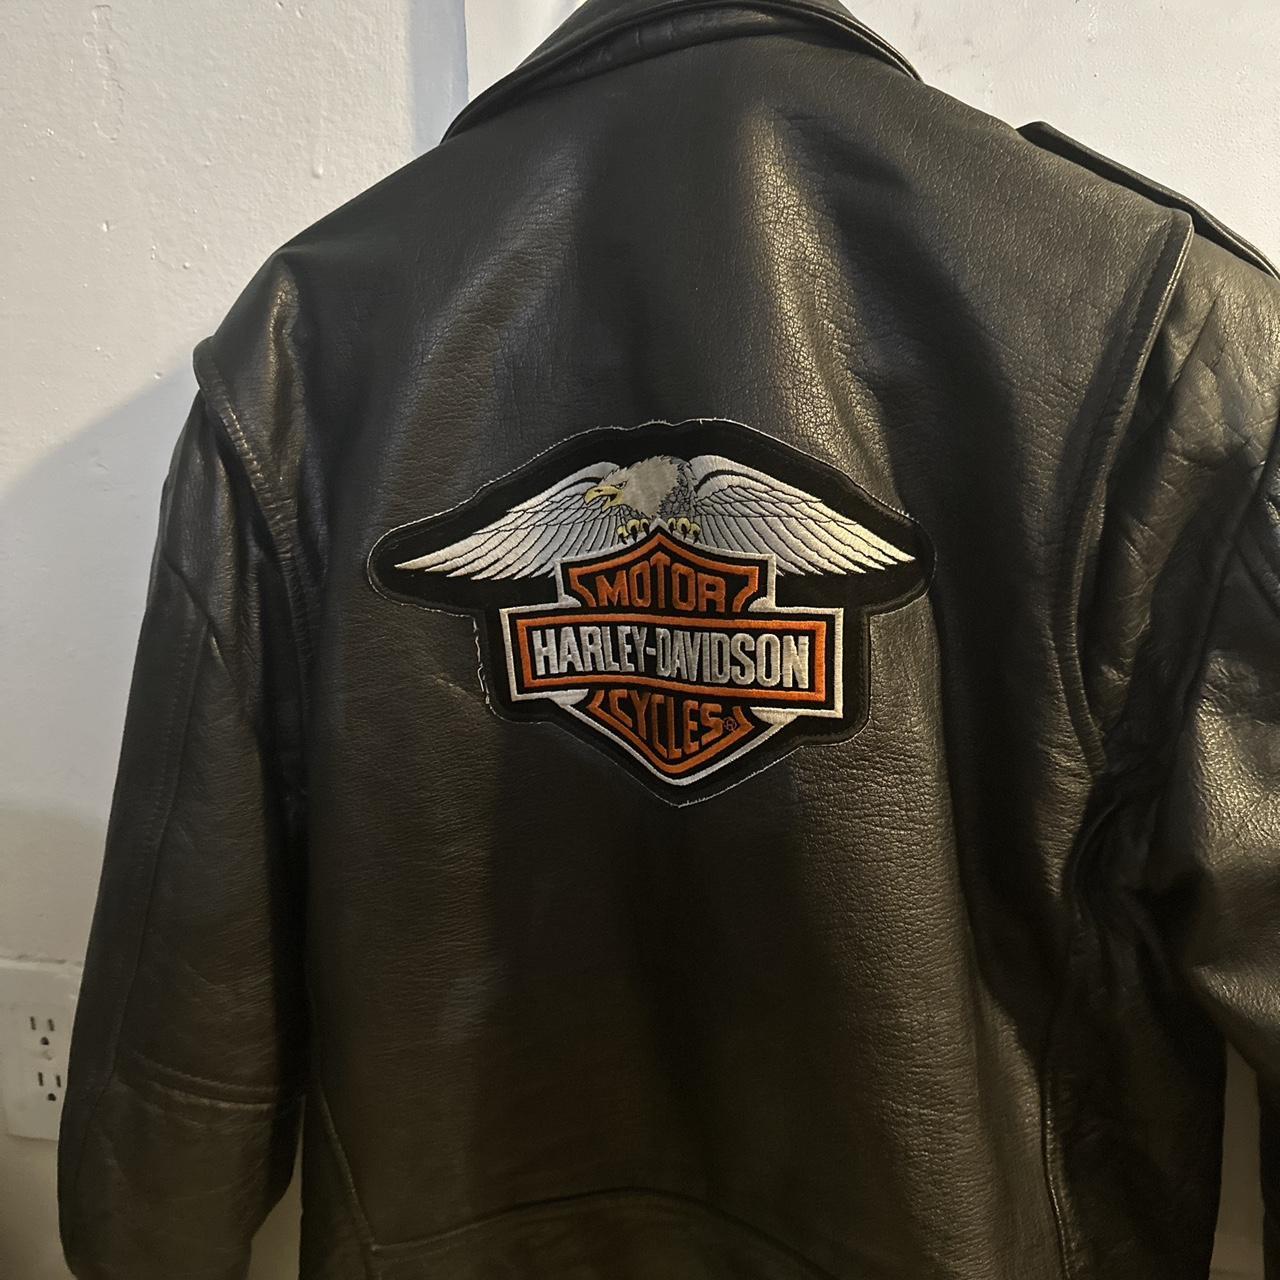 harley davidson jacket wilson leather vintage. Size... - Depop